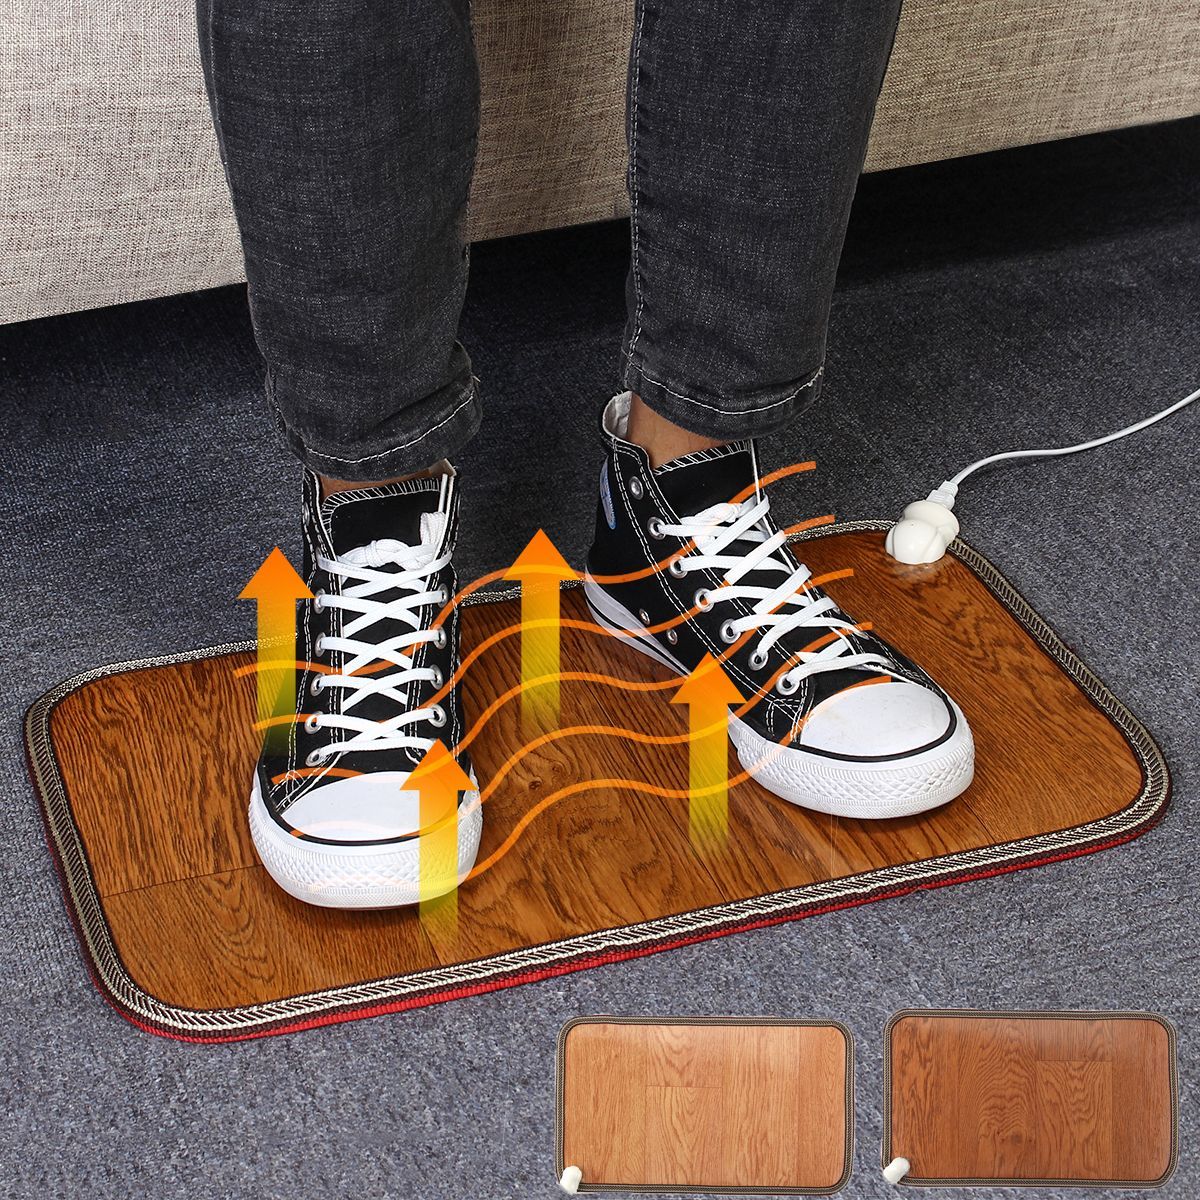 220V-Electric-Foot-Heating-Warmer-Pad-Heated-Floor-Carpet-Mat-Heating-Board-Warm-Keeper-1455685